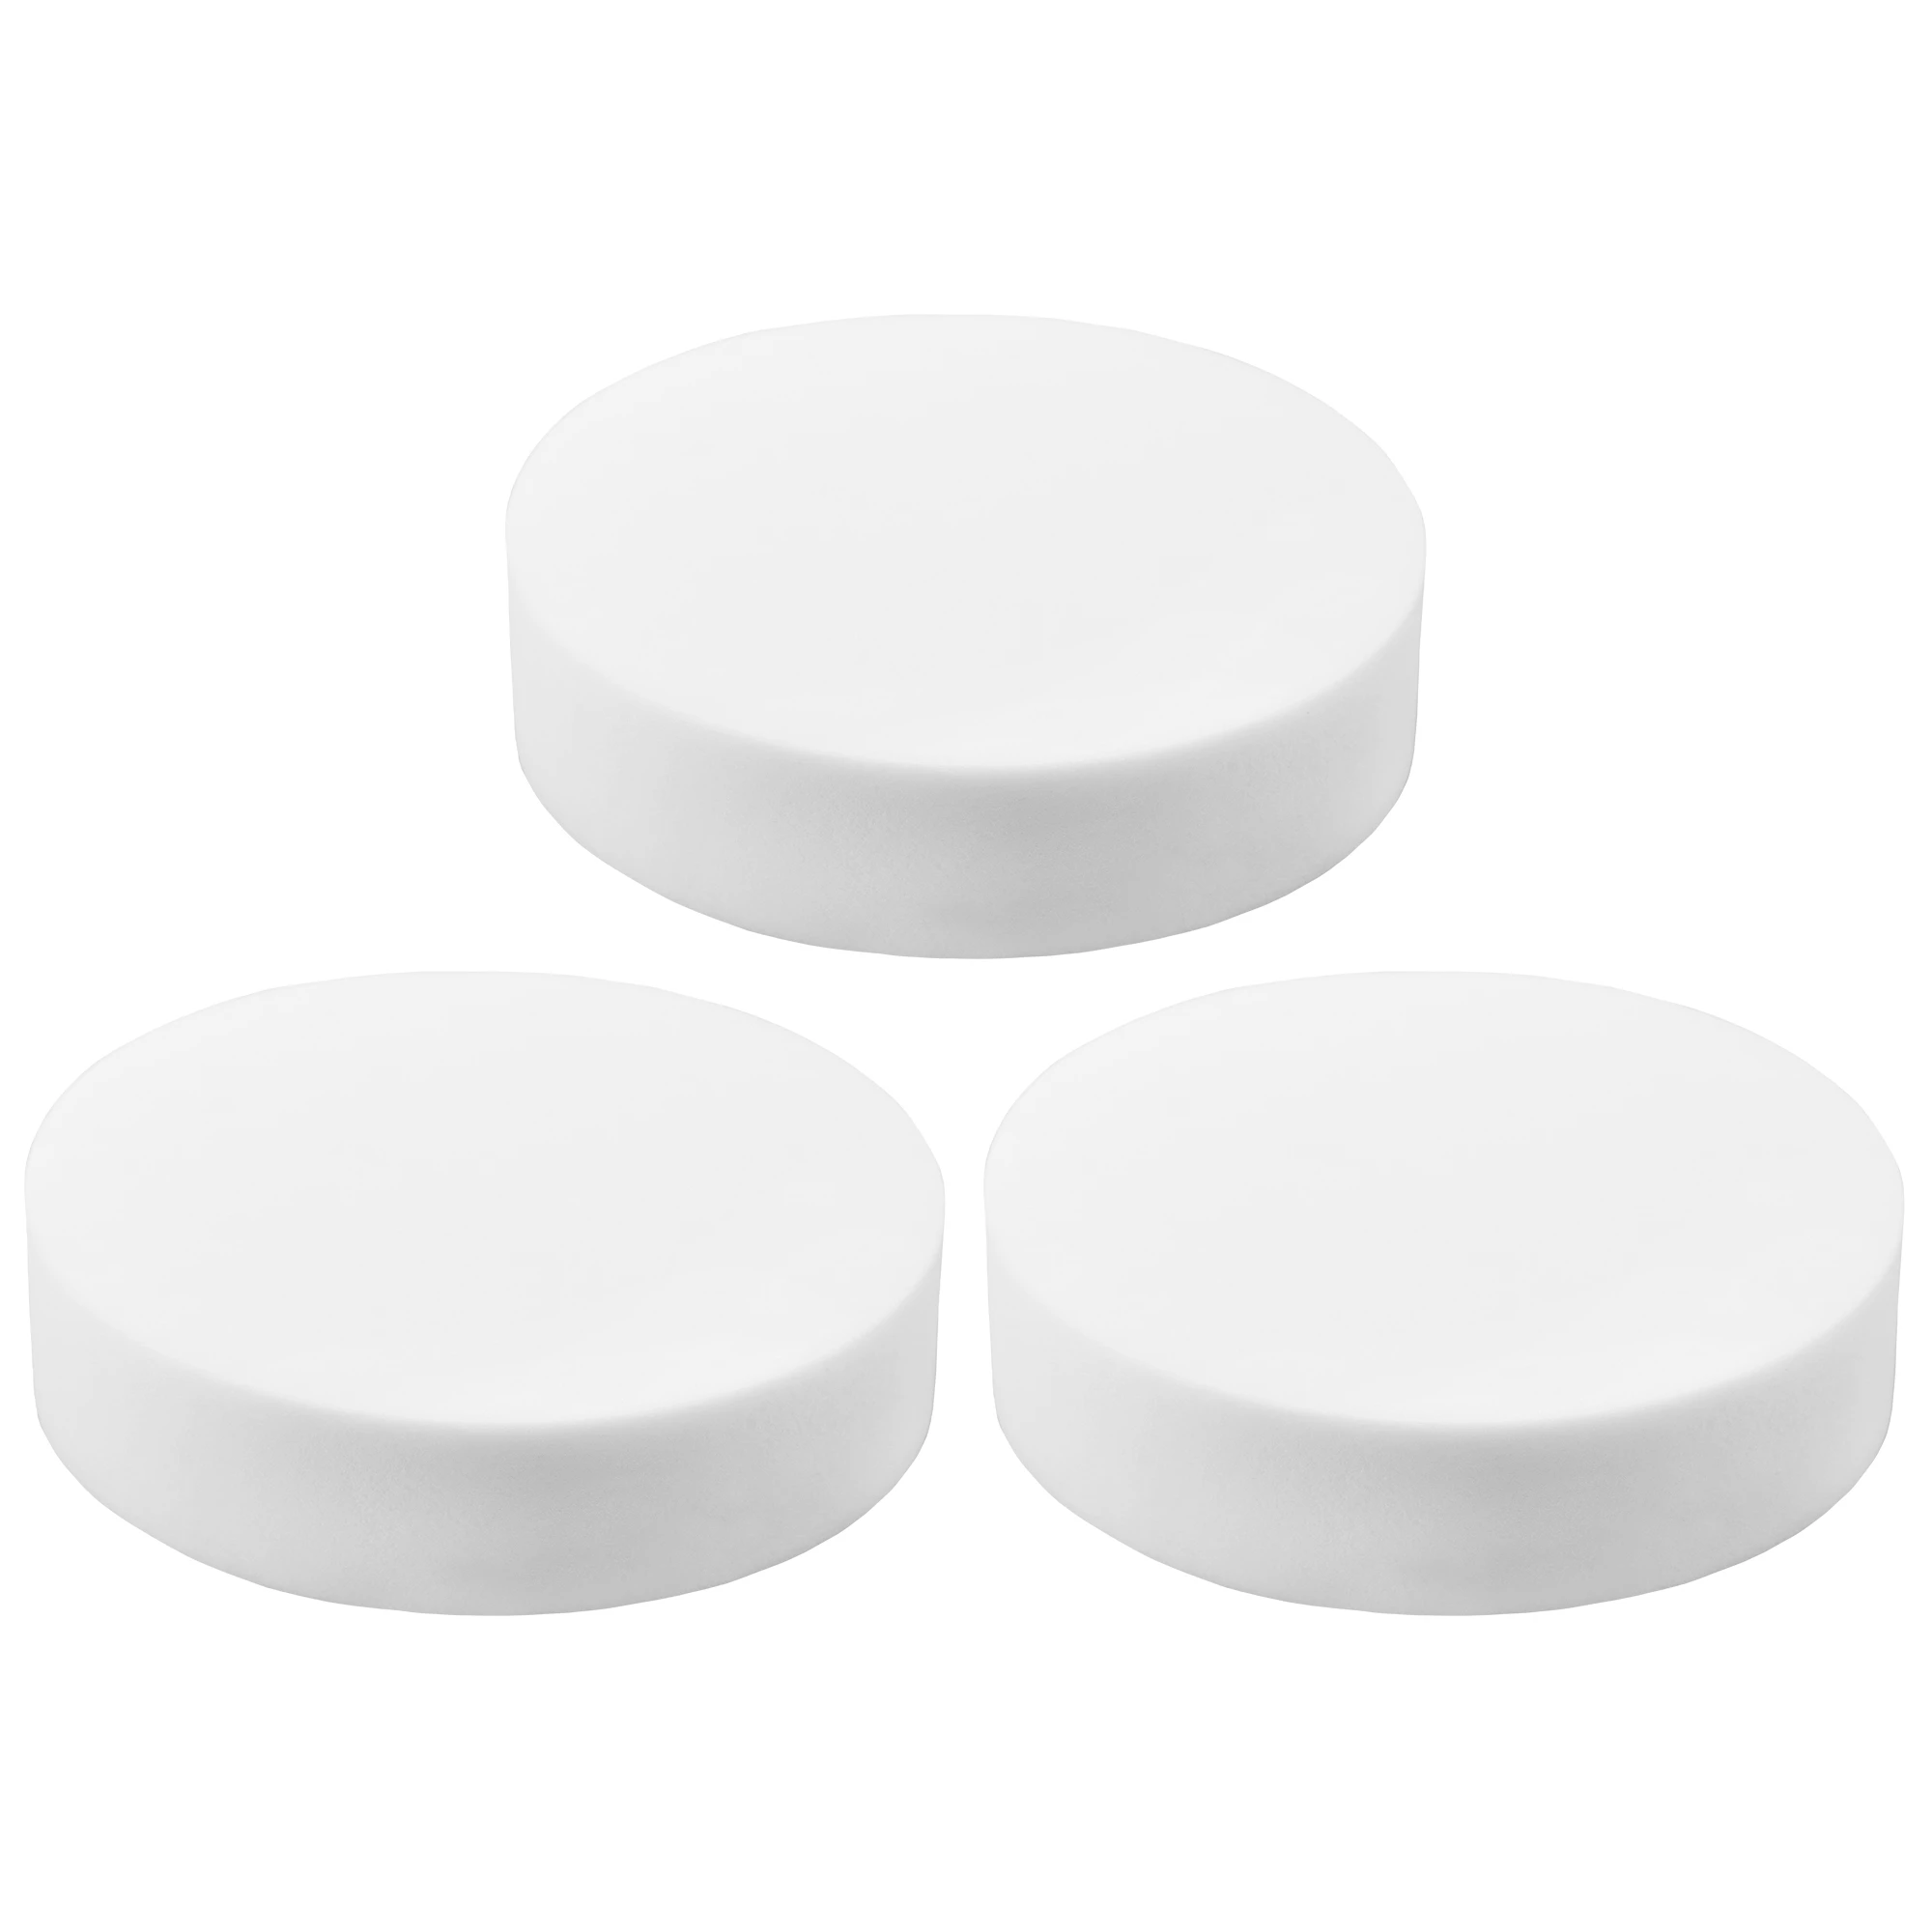 Drei weiße Mikroschwämme vor weißem Hintergrund wie eine Pyramide angeordnet. Oben ein Mikroschwamm, darunter zwei Stück nebeneinander.